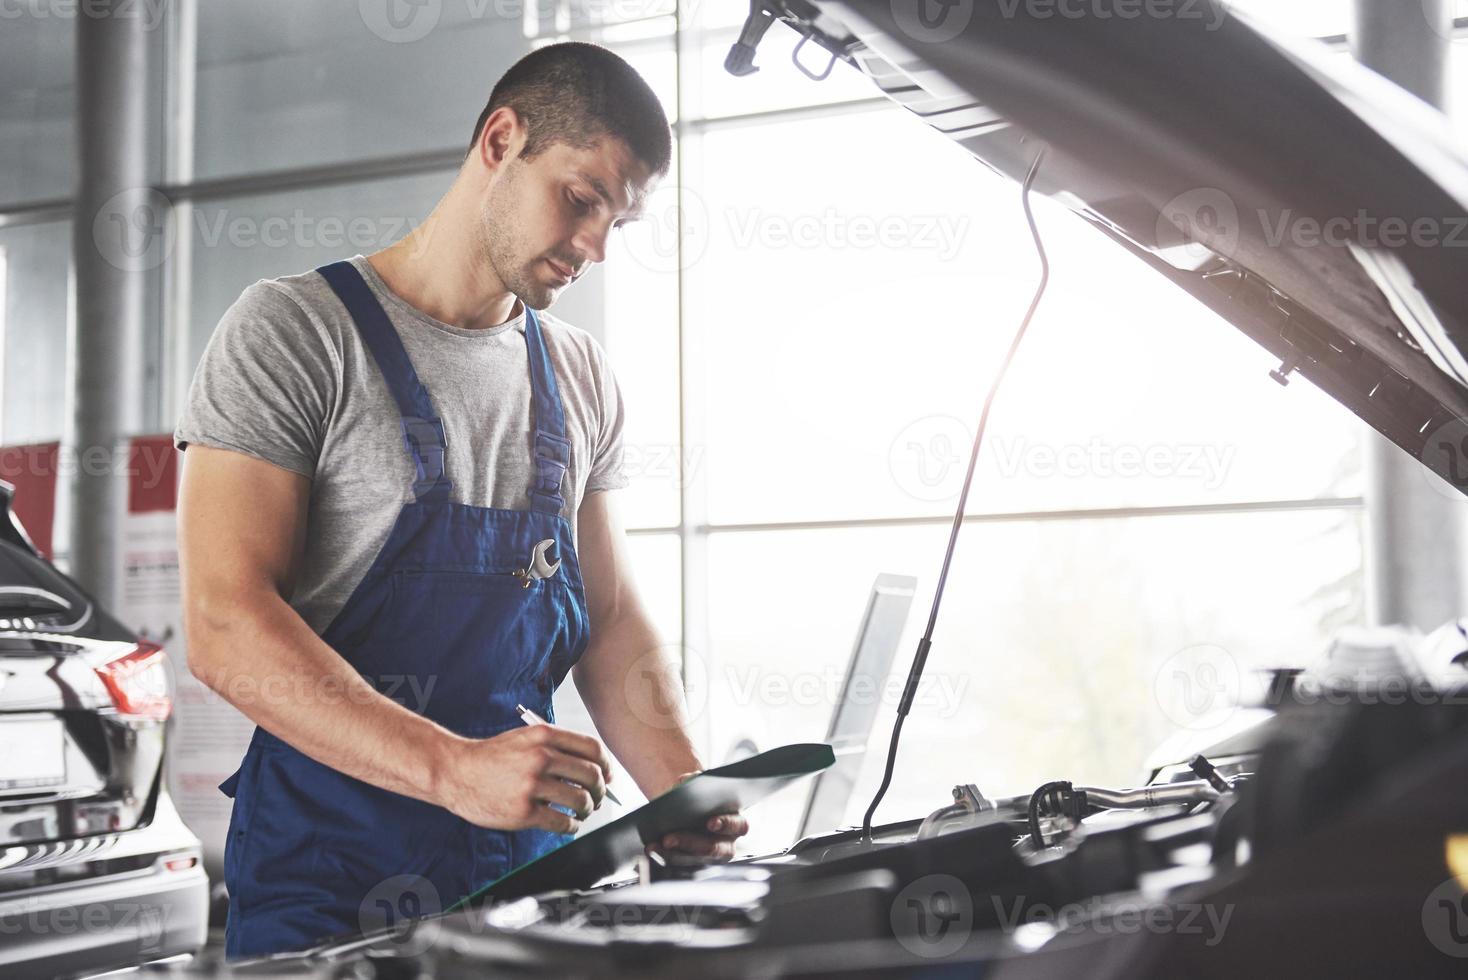 portret van een monteur aan het werk in zijn garage - autoservice, reparatie, onderhoud en mensenconcept foto